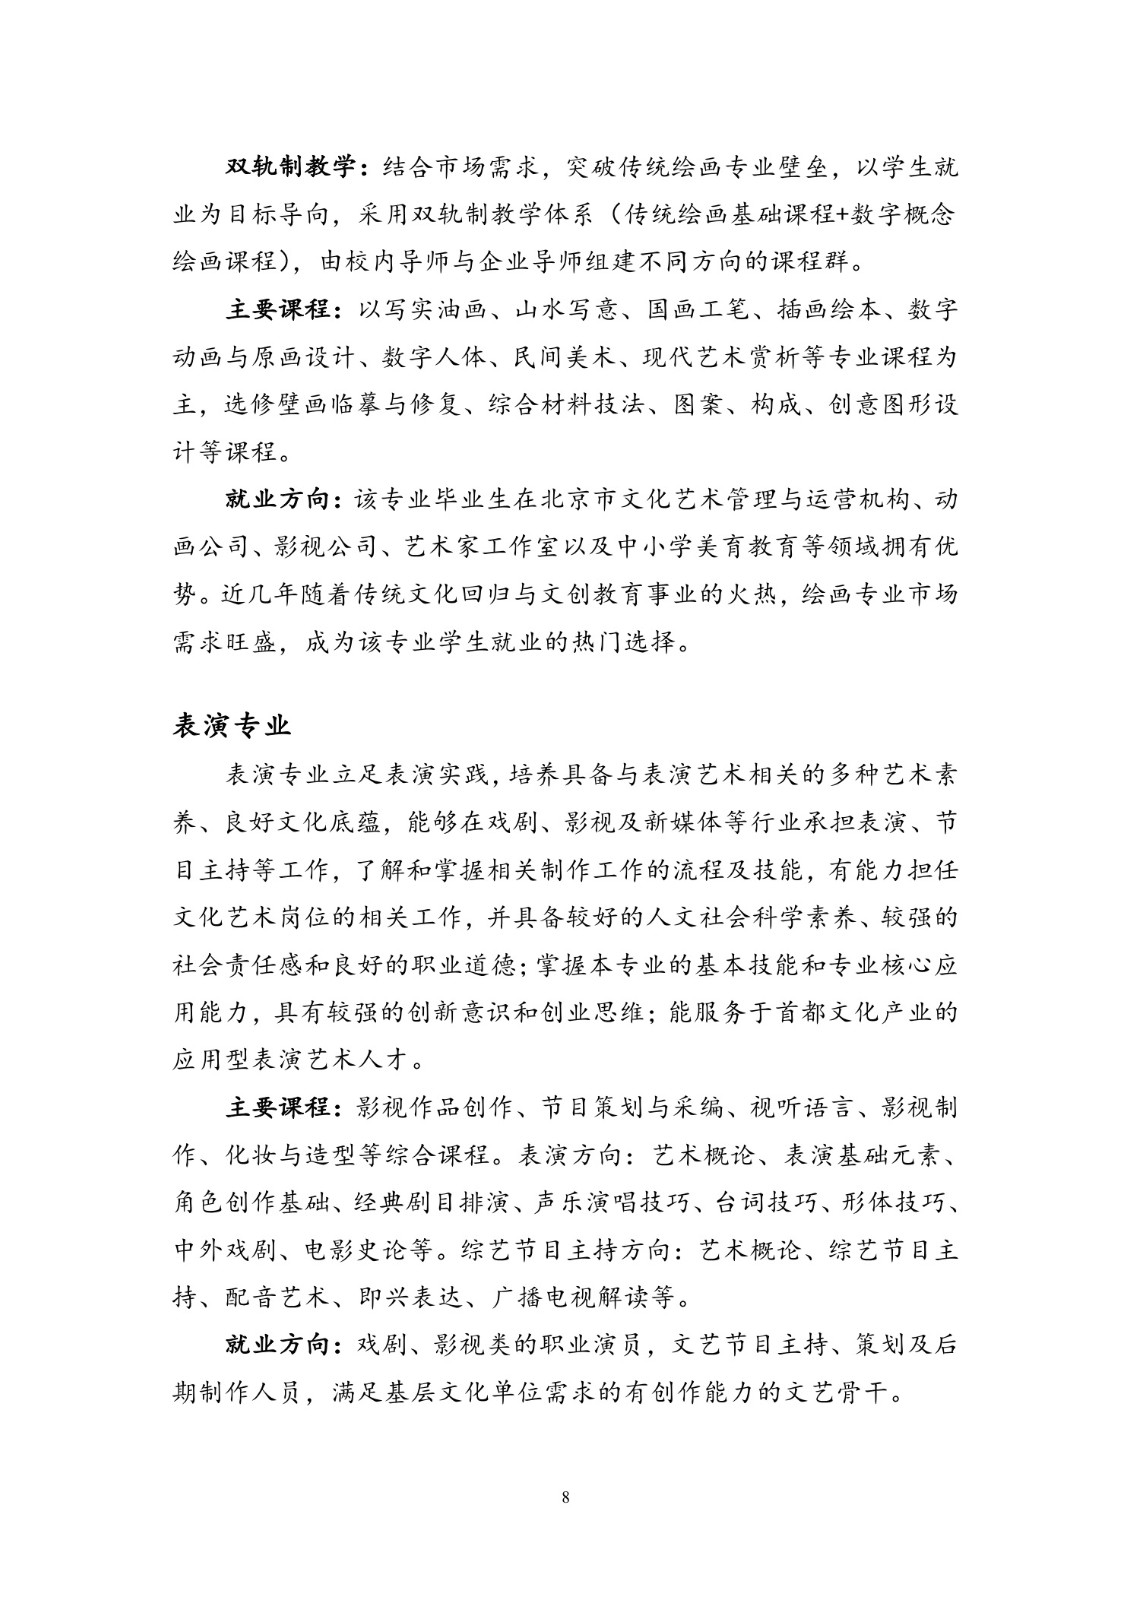 北京联合大学2018年艺术类招生简章20180103-page8 2.jpeg